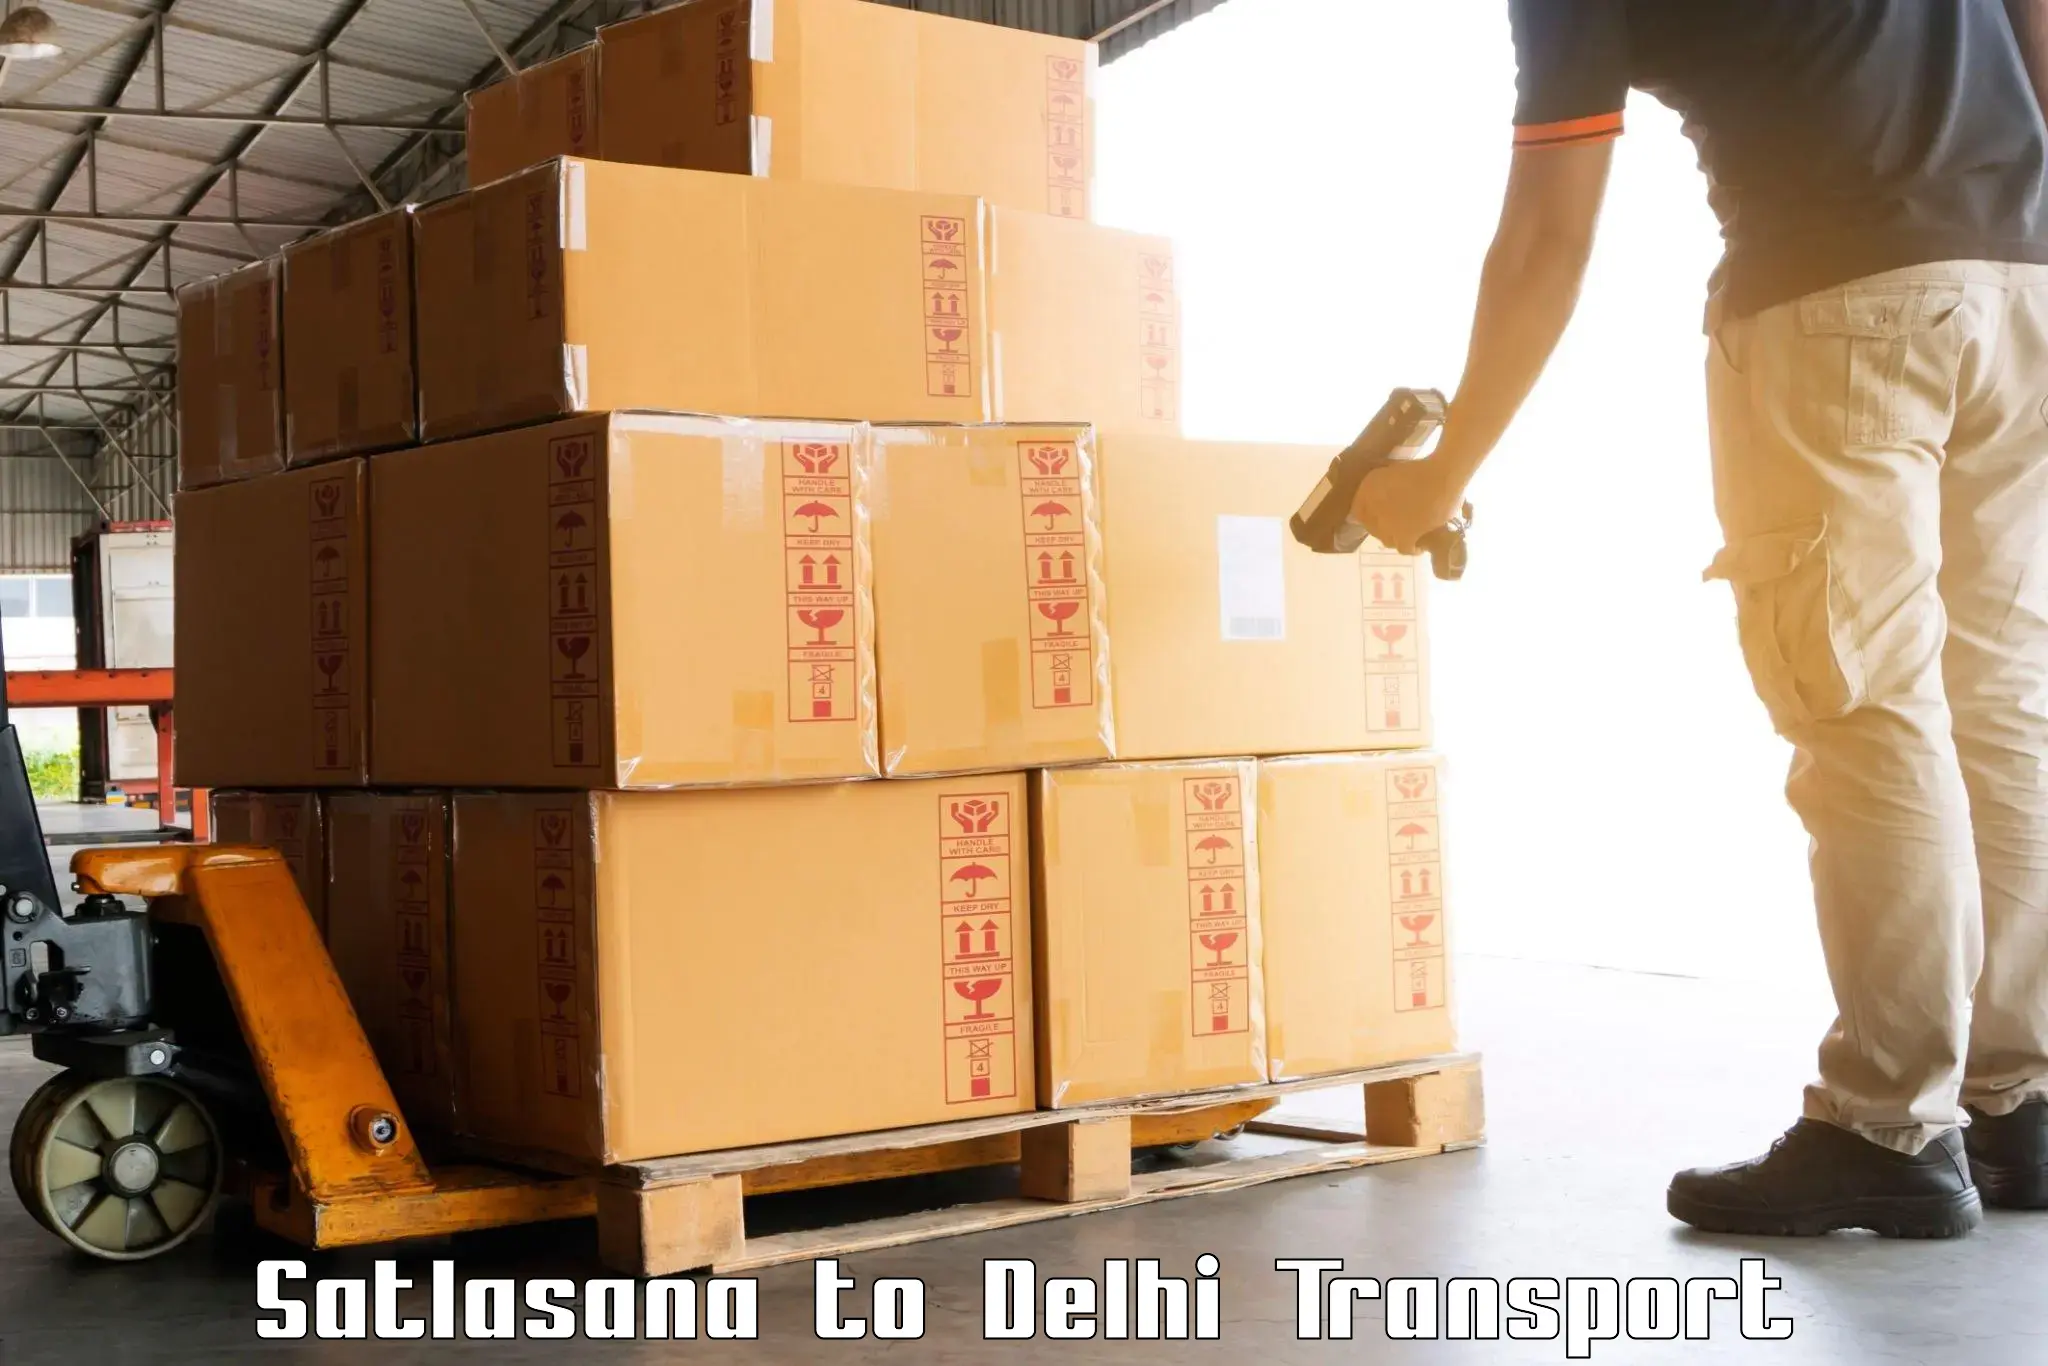 Bike transfer in Satlasana to East Delhi